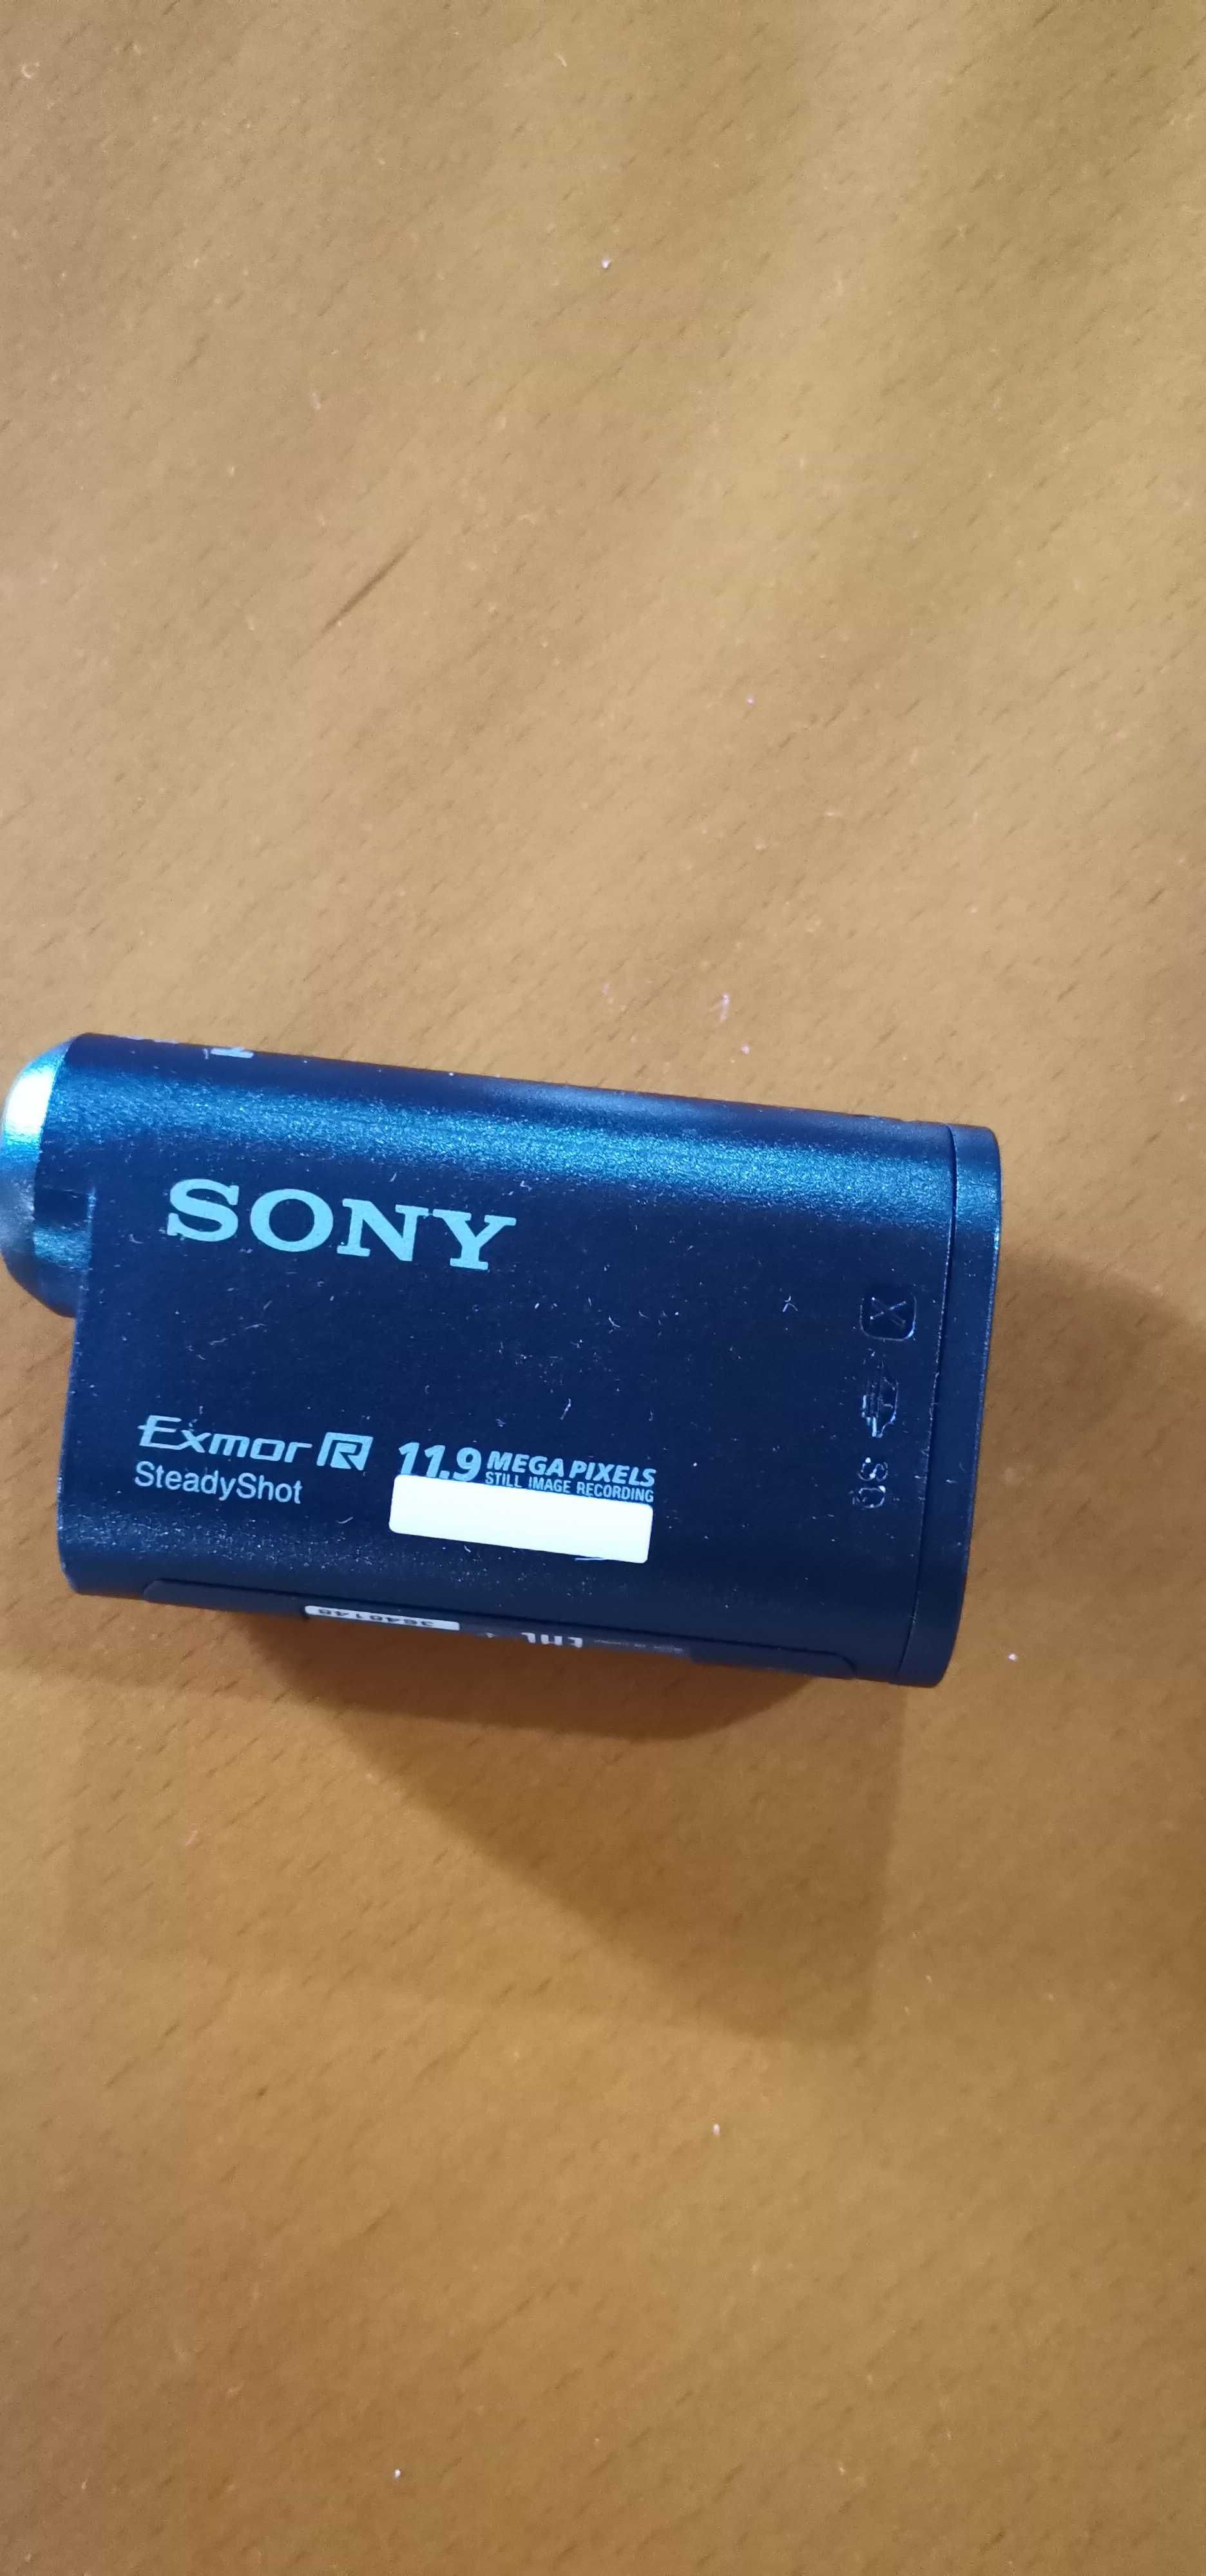 Câmara action da Sony